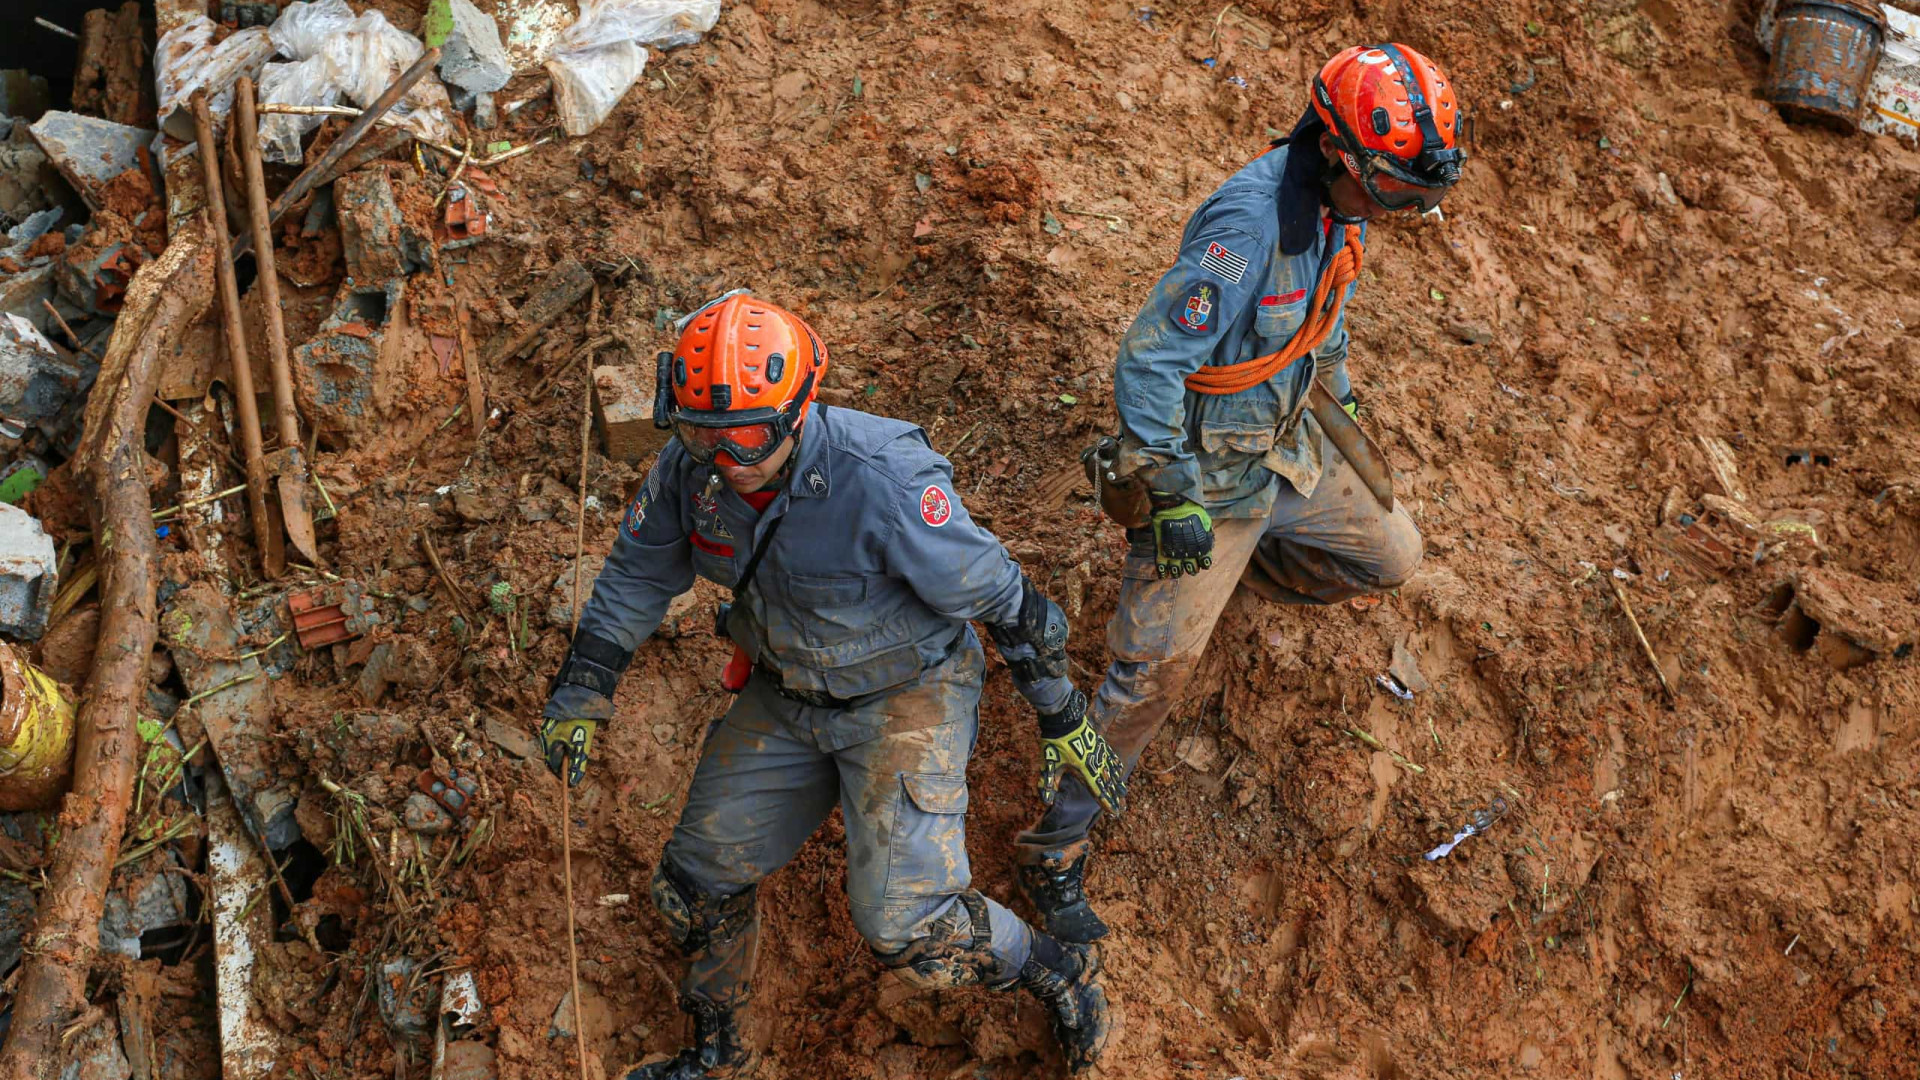 Deslizamento de terra mata duas pessoas neste domingo (25) em Minas Gerais